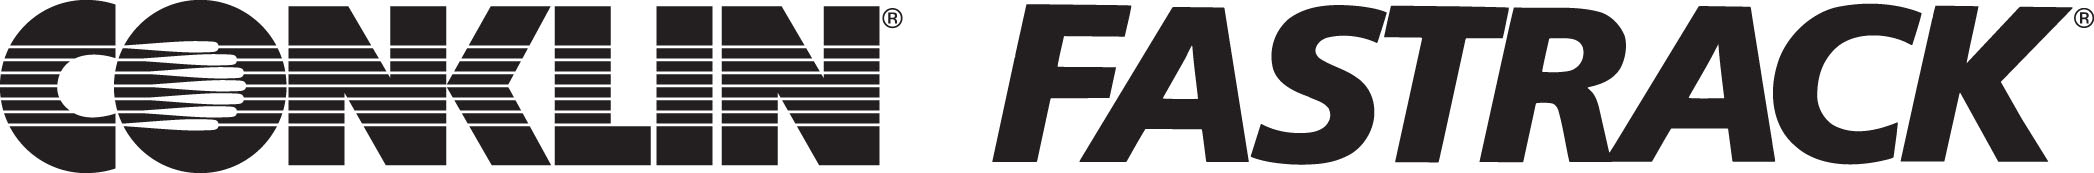 conklin fastrack logo